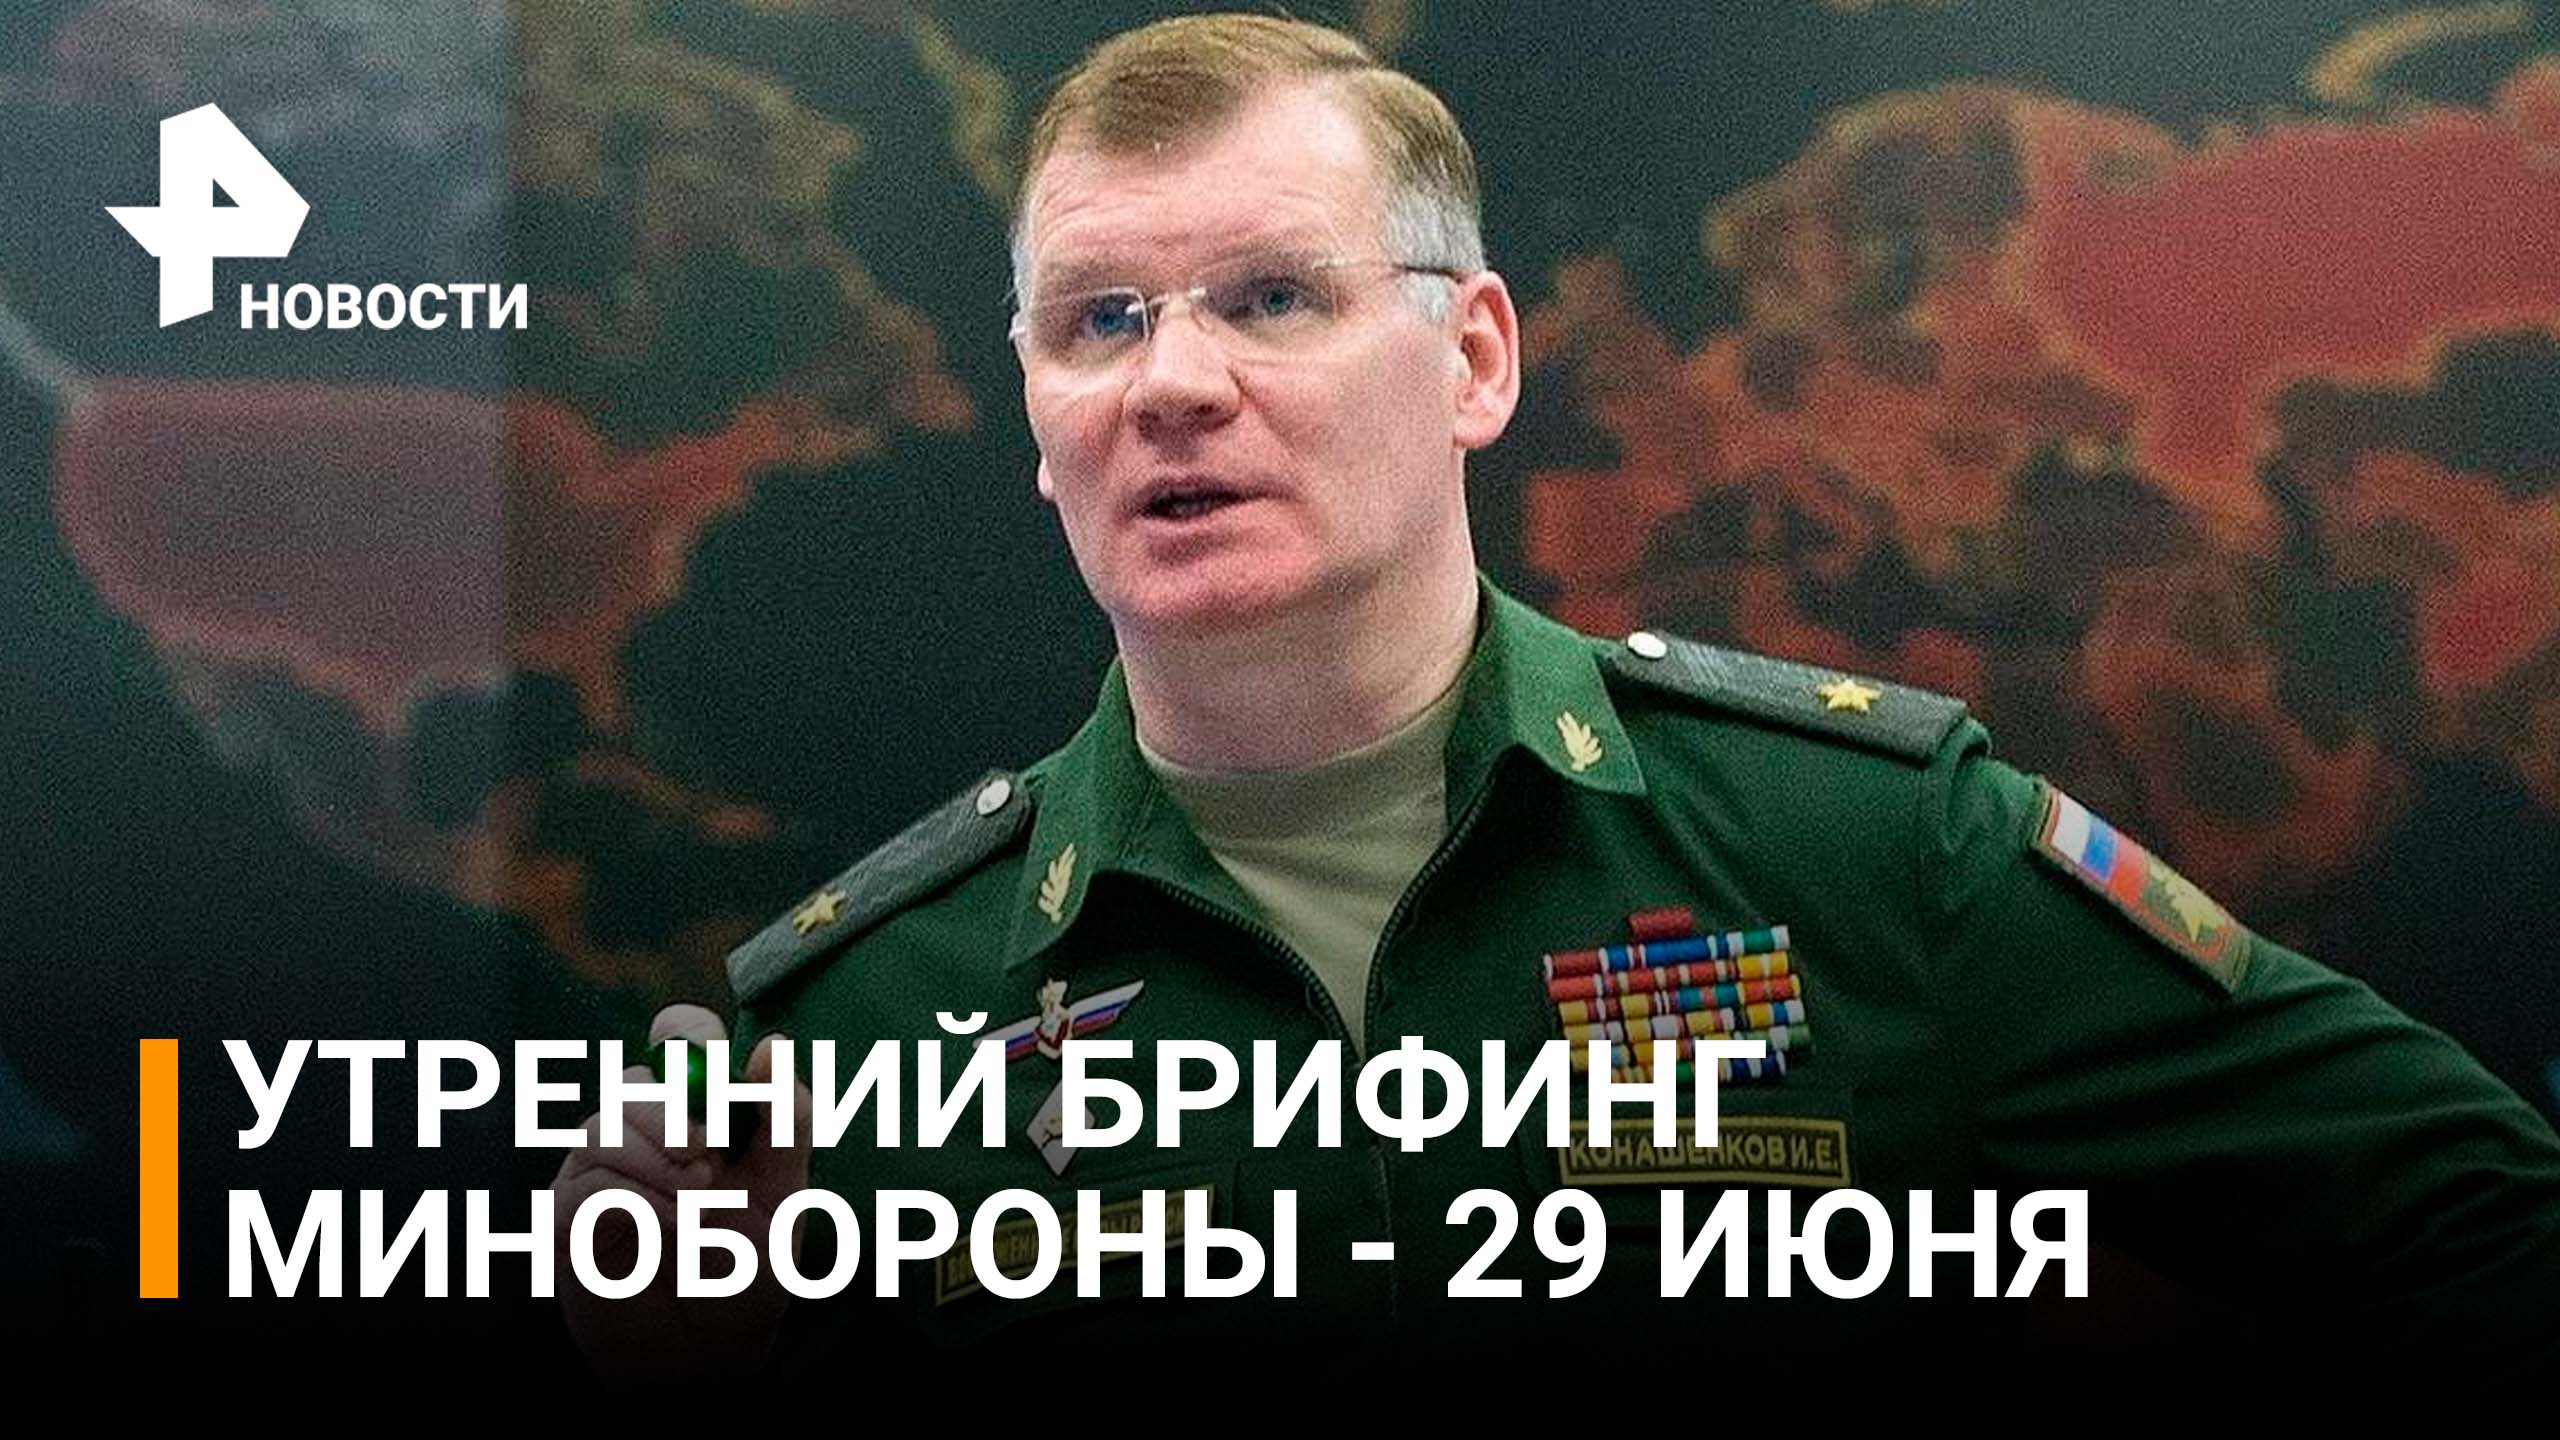 Уничтожены до 100 боевиков нацбатальона "Кракен" / РЕН Новости